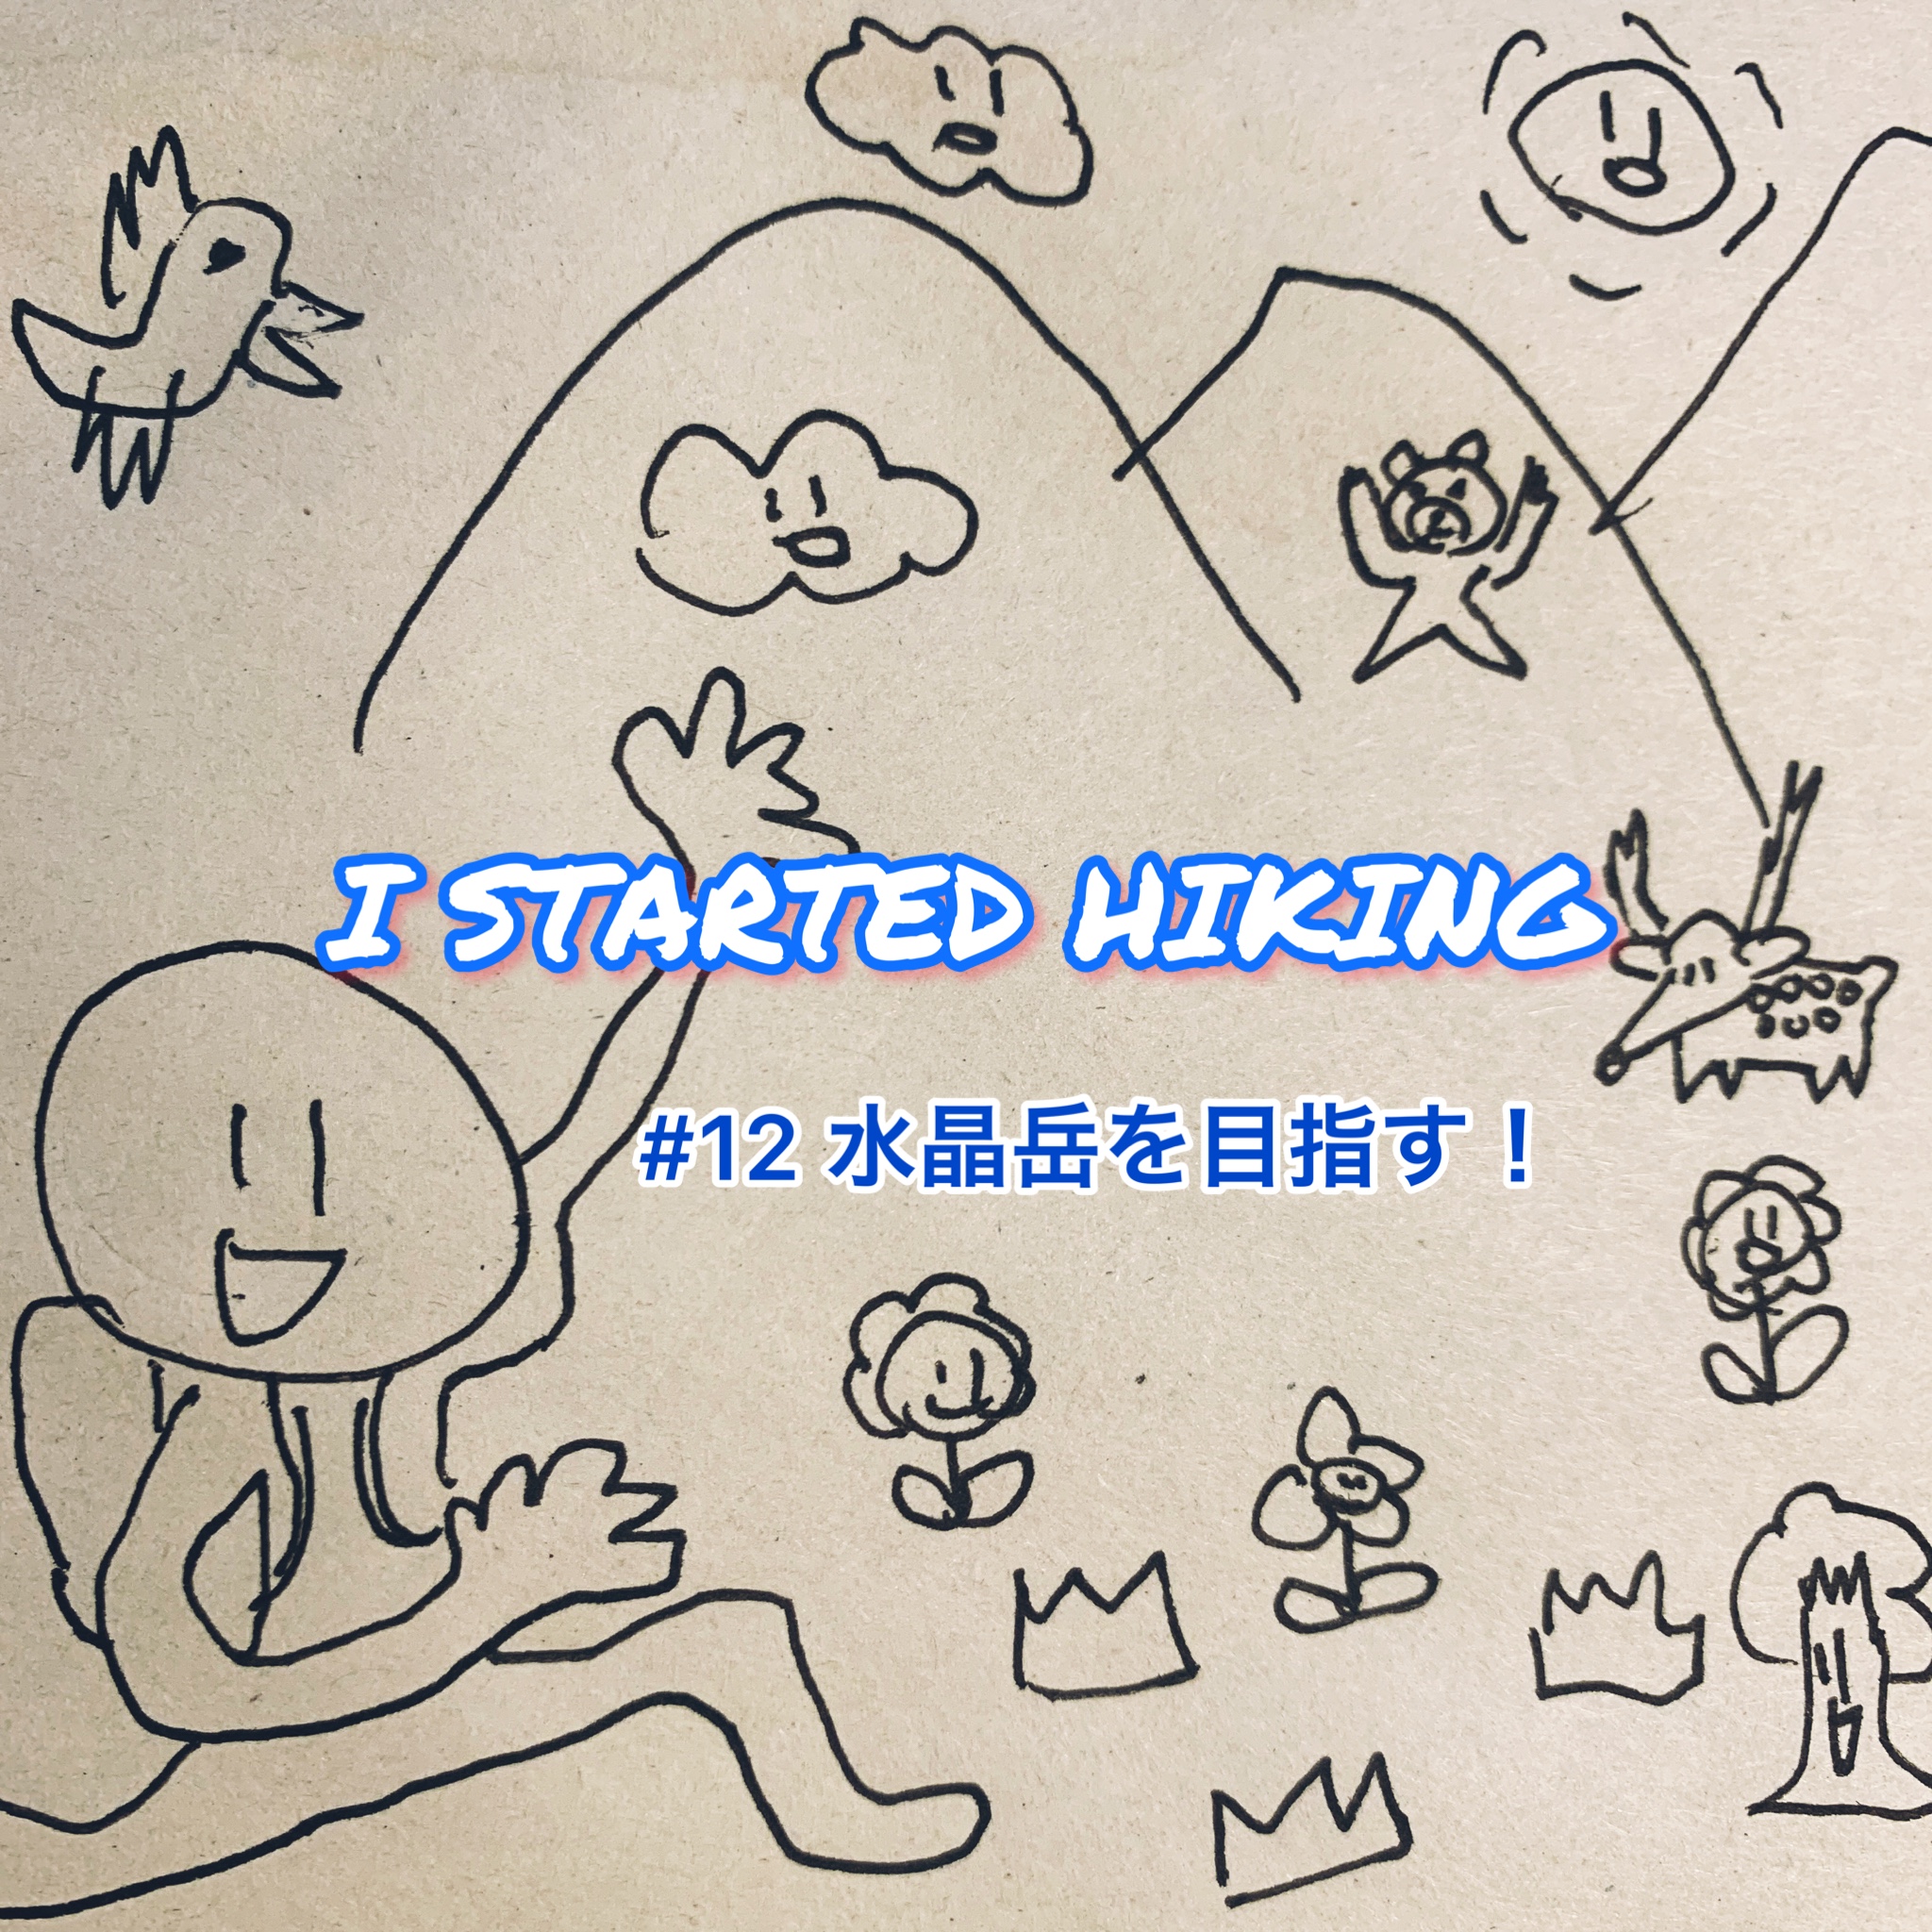 I STARTED HIKING #12 水晶岳を目指す！